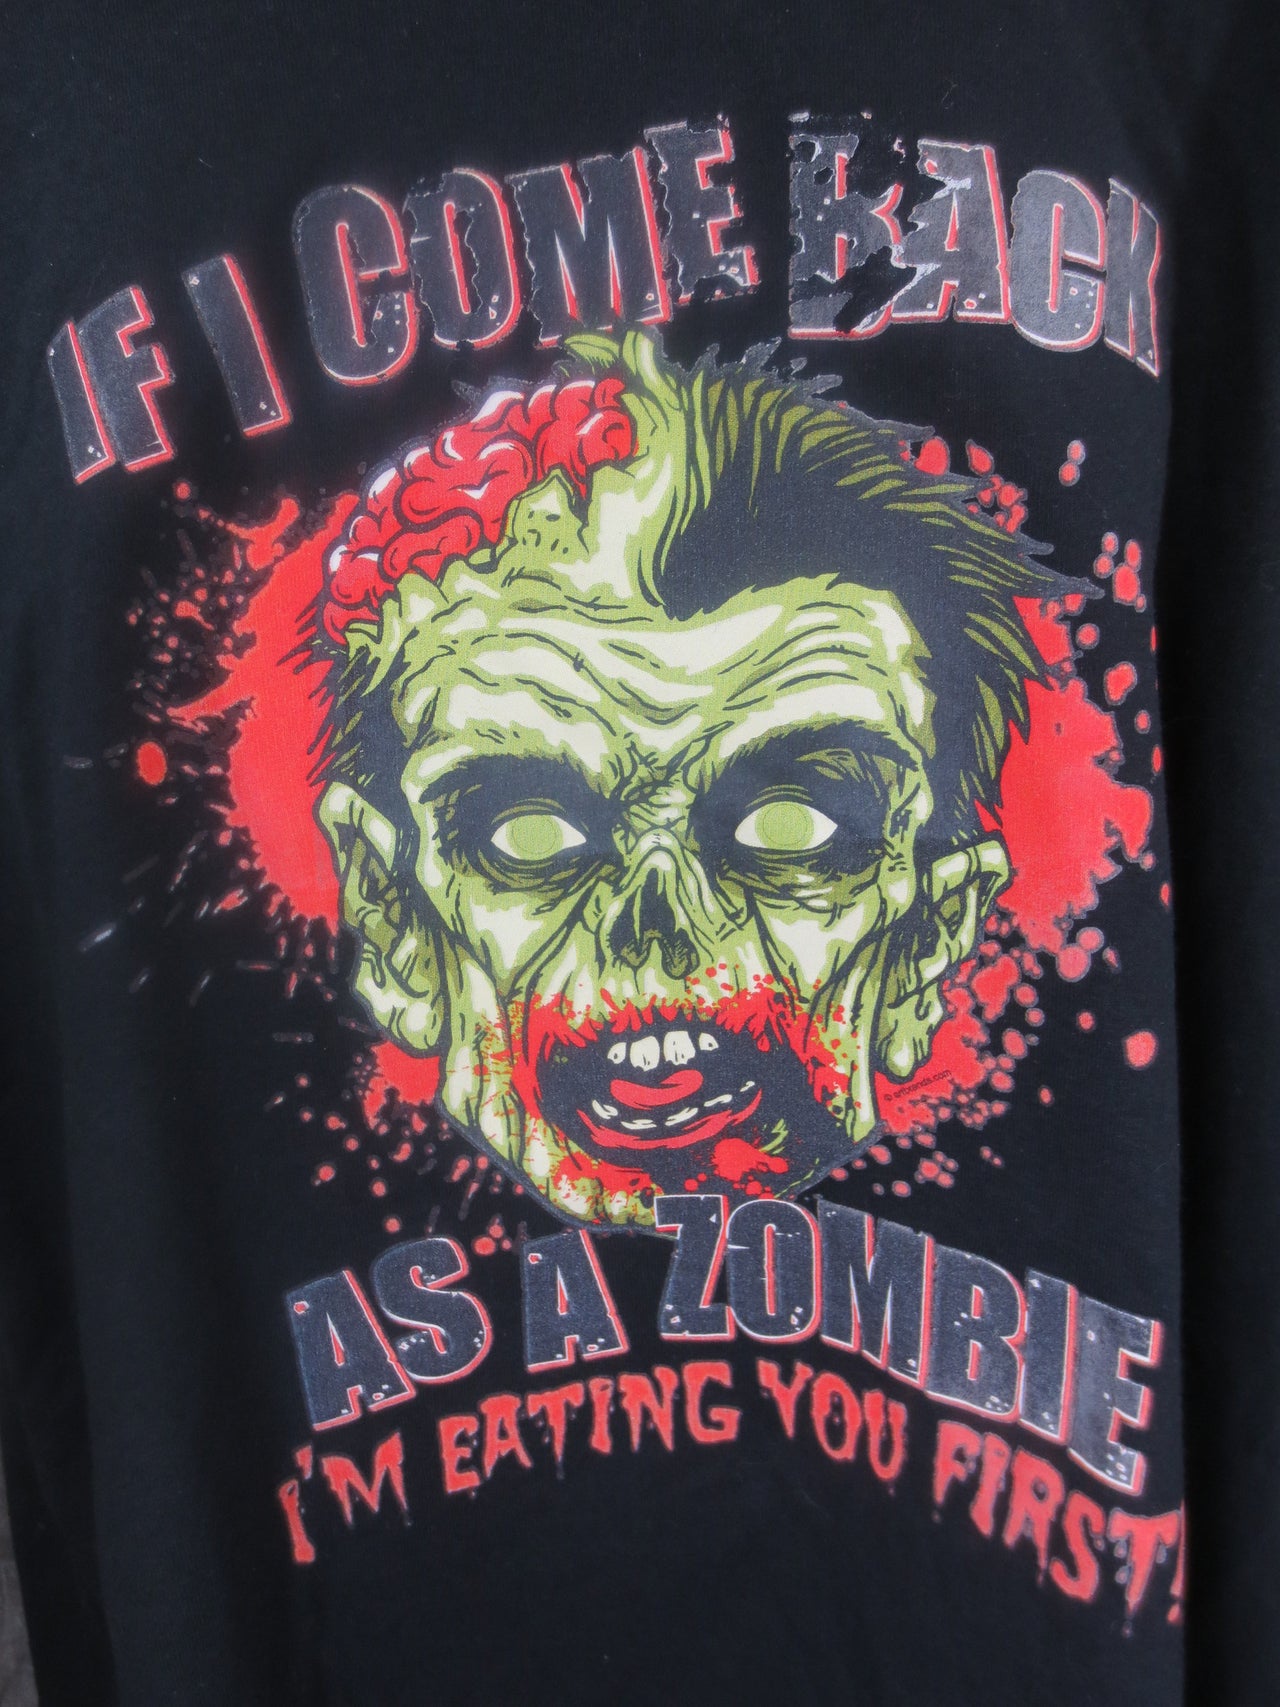 Im Eating You First Zombie tshirt - TshirtNow.net - 3